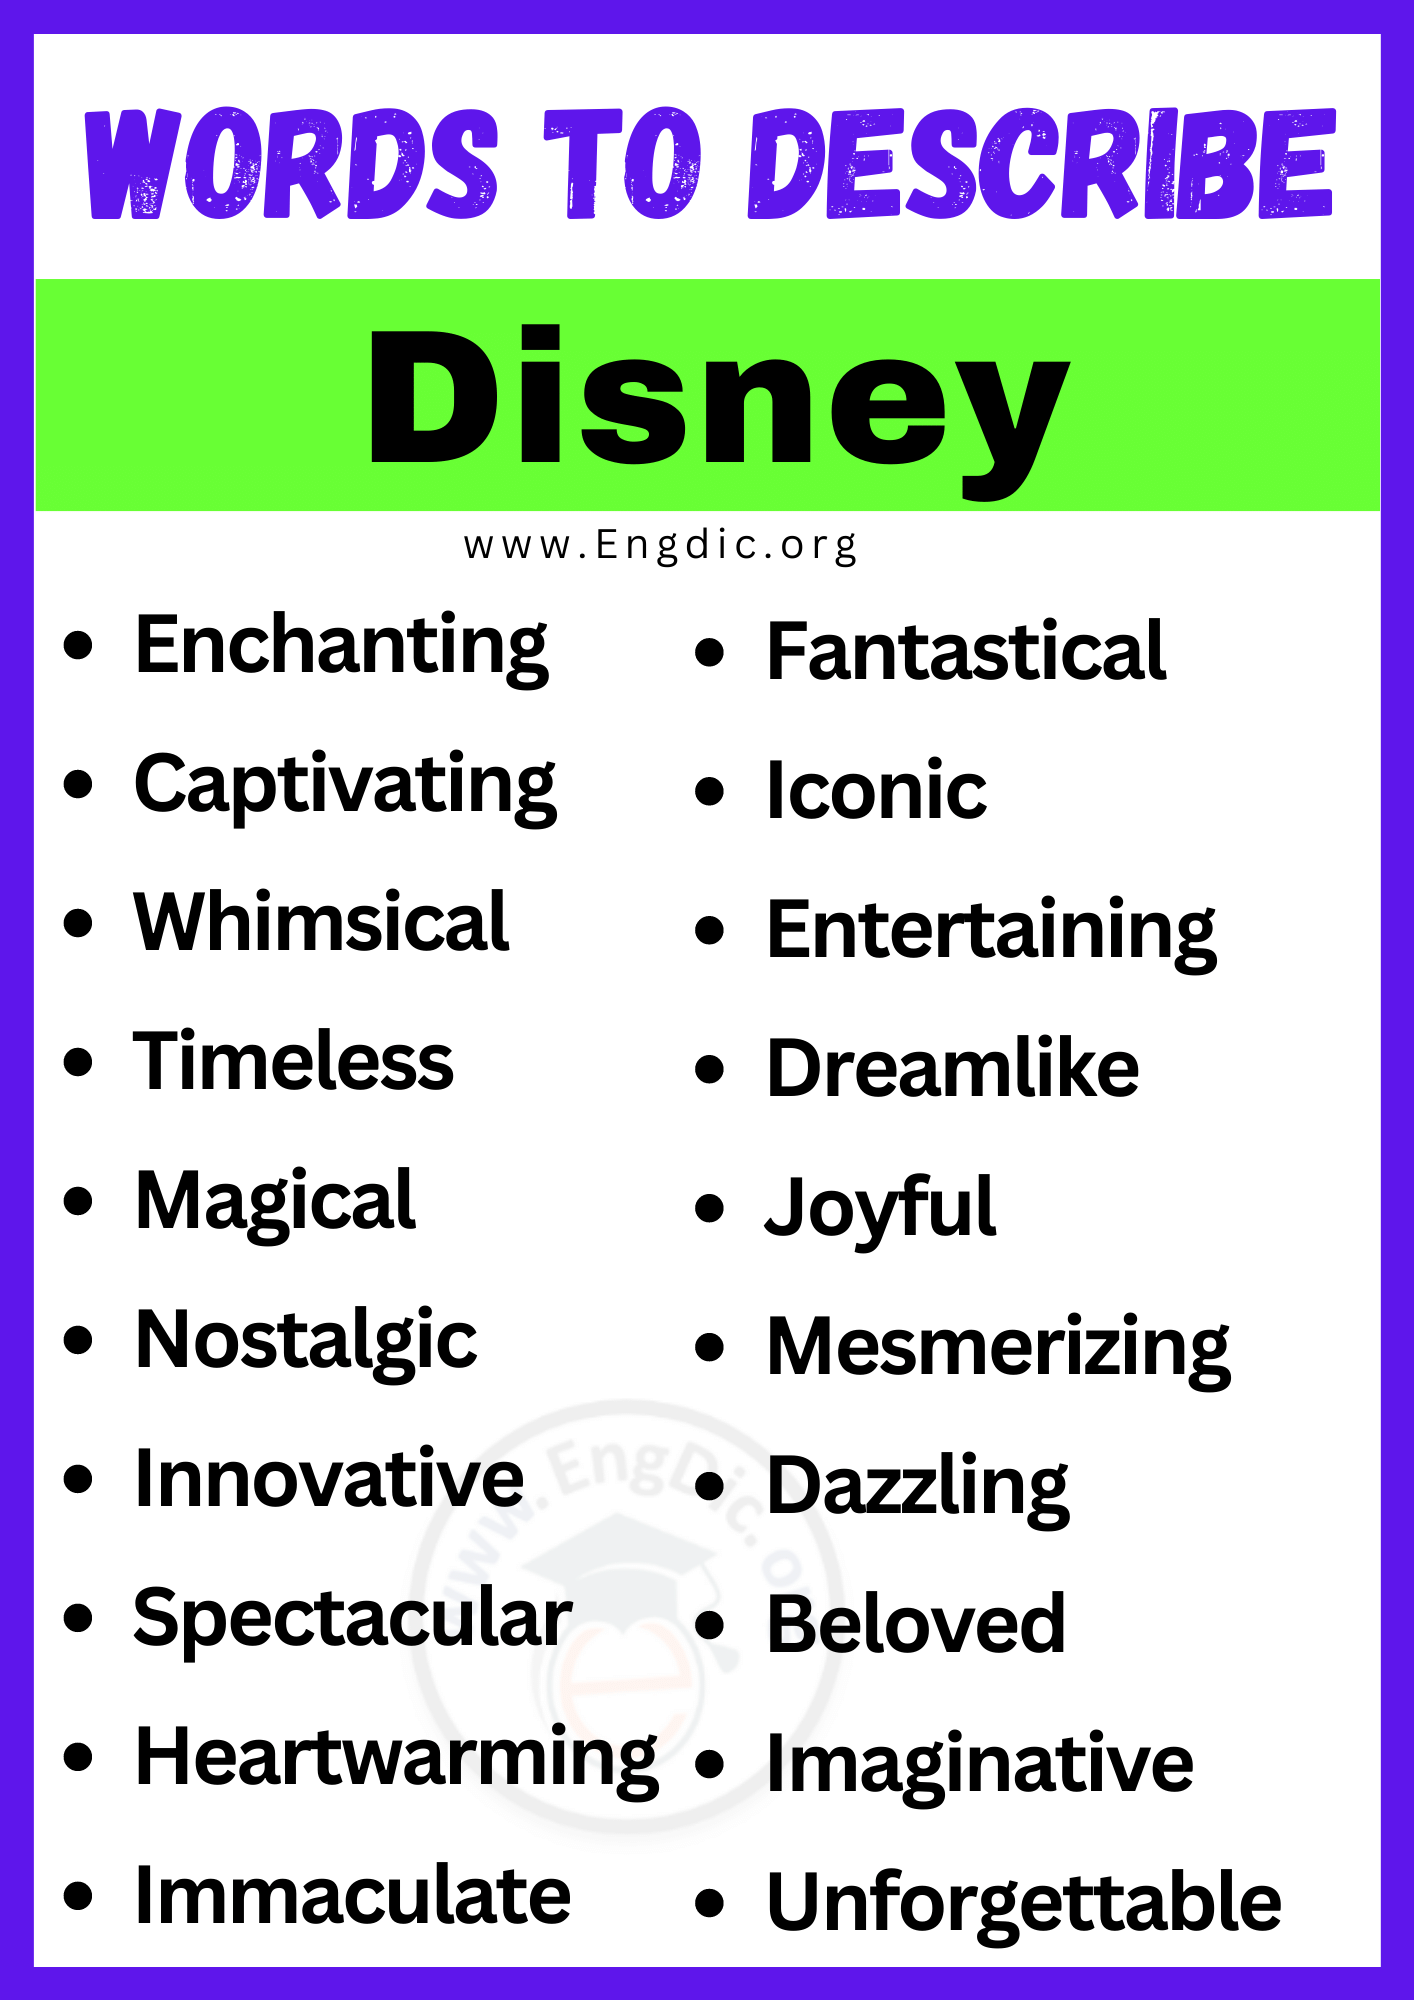 Words to Describe Disney